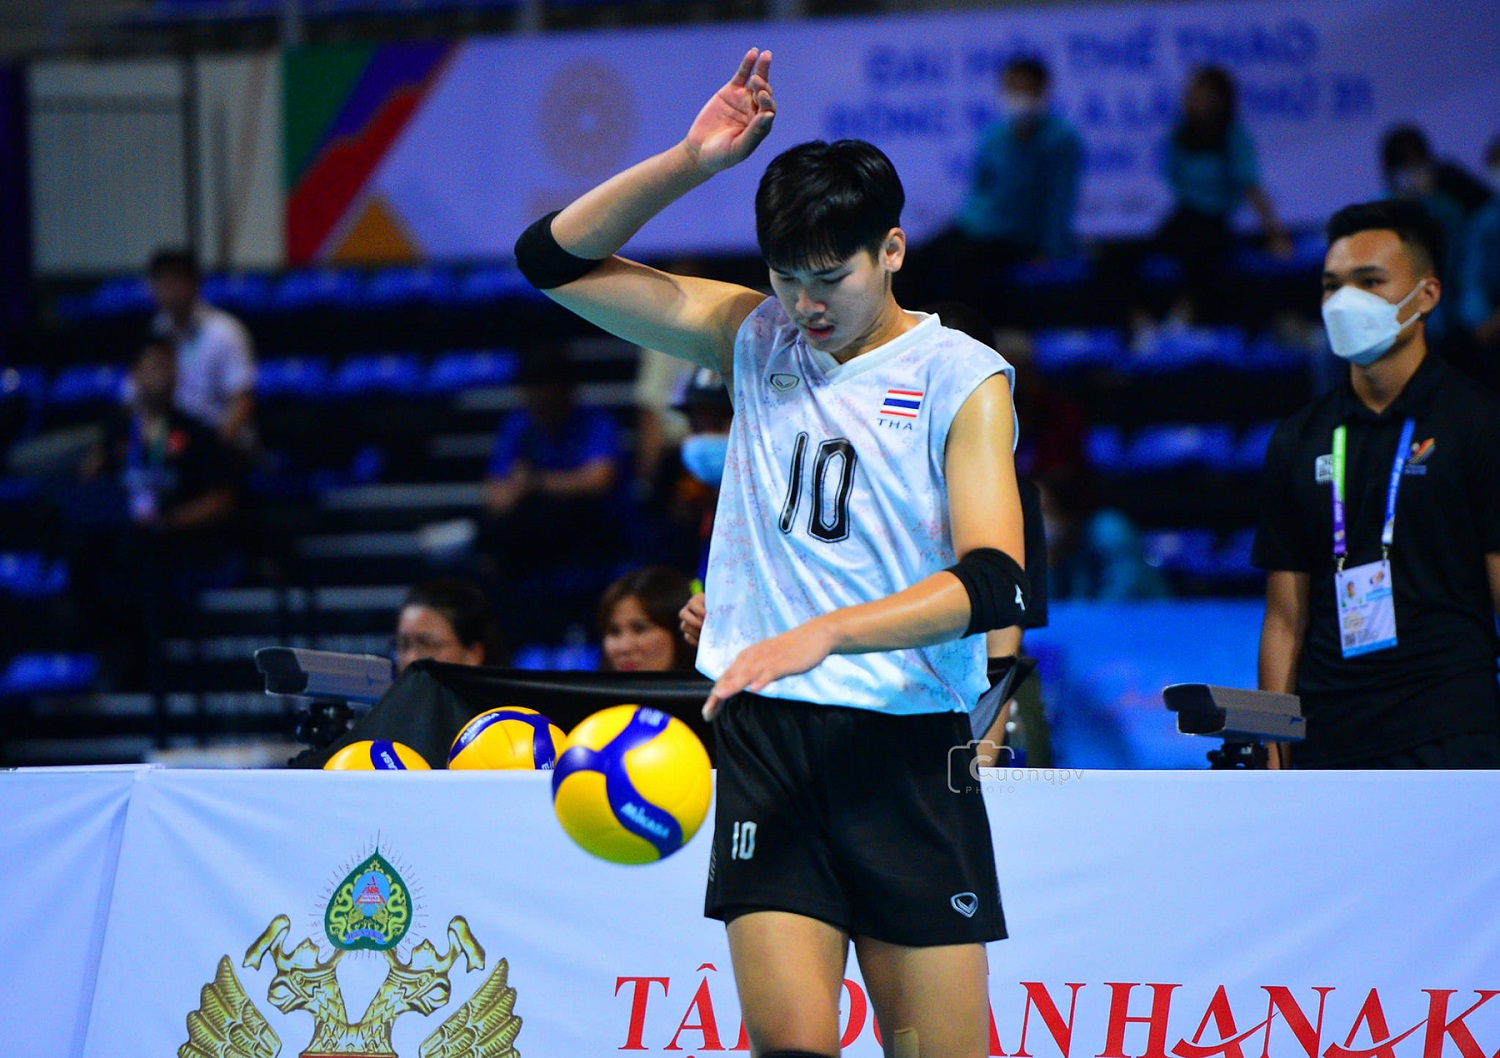 ดาราวอลเลย์บอลชายชาวไทยที่ทำให้เกิดไข้ในการแข่งขันซีเกมส์ครั้งที่ 31 จะแข่งขันชิงแชมป์แห่งชาติ